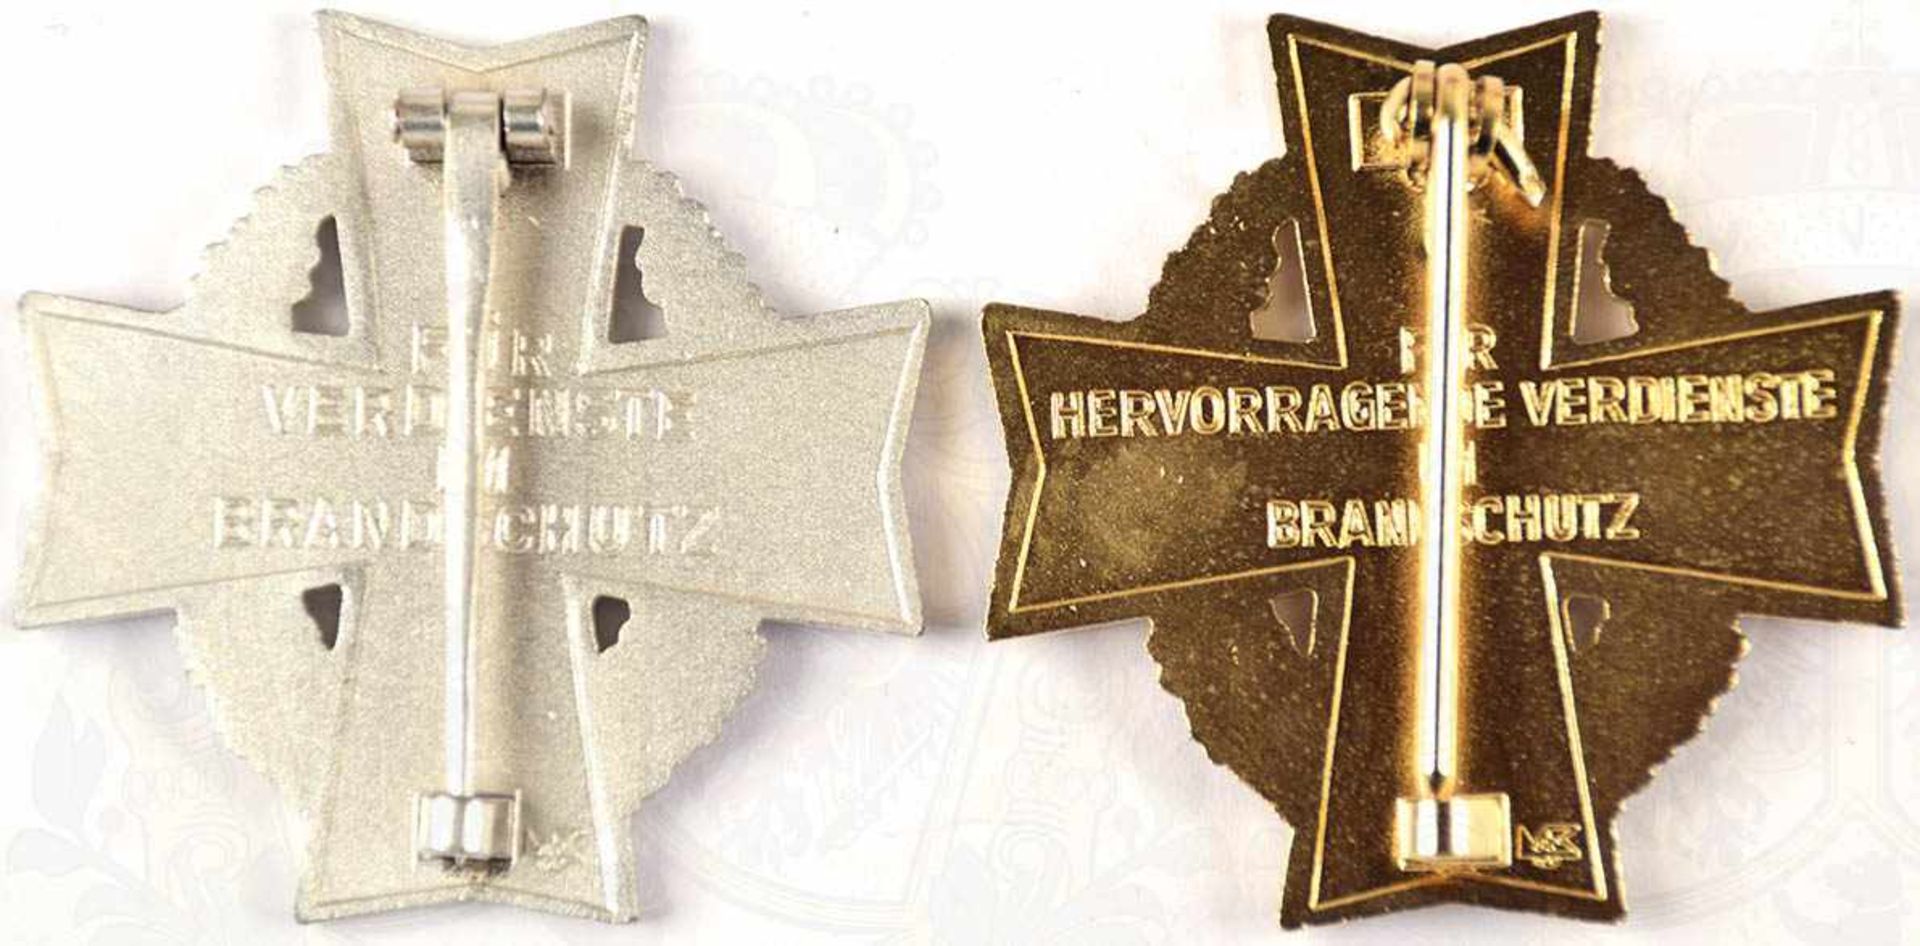 2 BRANDSCHUTZ-EHRENZEICHEN SACHSEN-ANHALT, Steckkreuze in Gold u. Silber, Buntmetall/vergld./ - Bild 3 aus 3